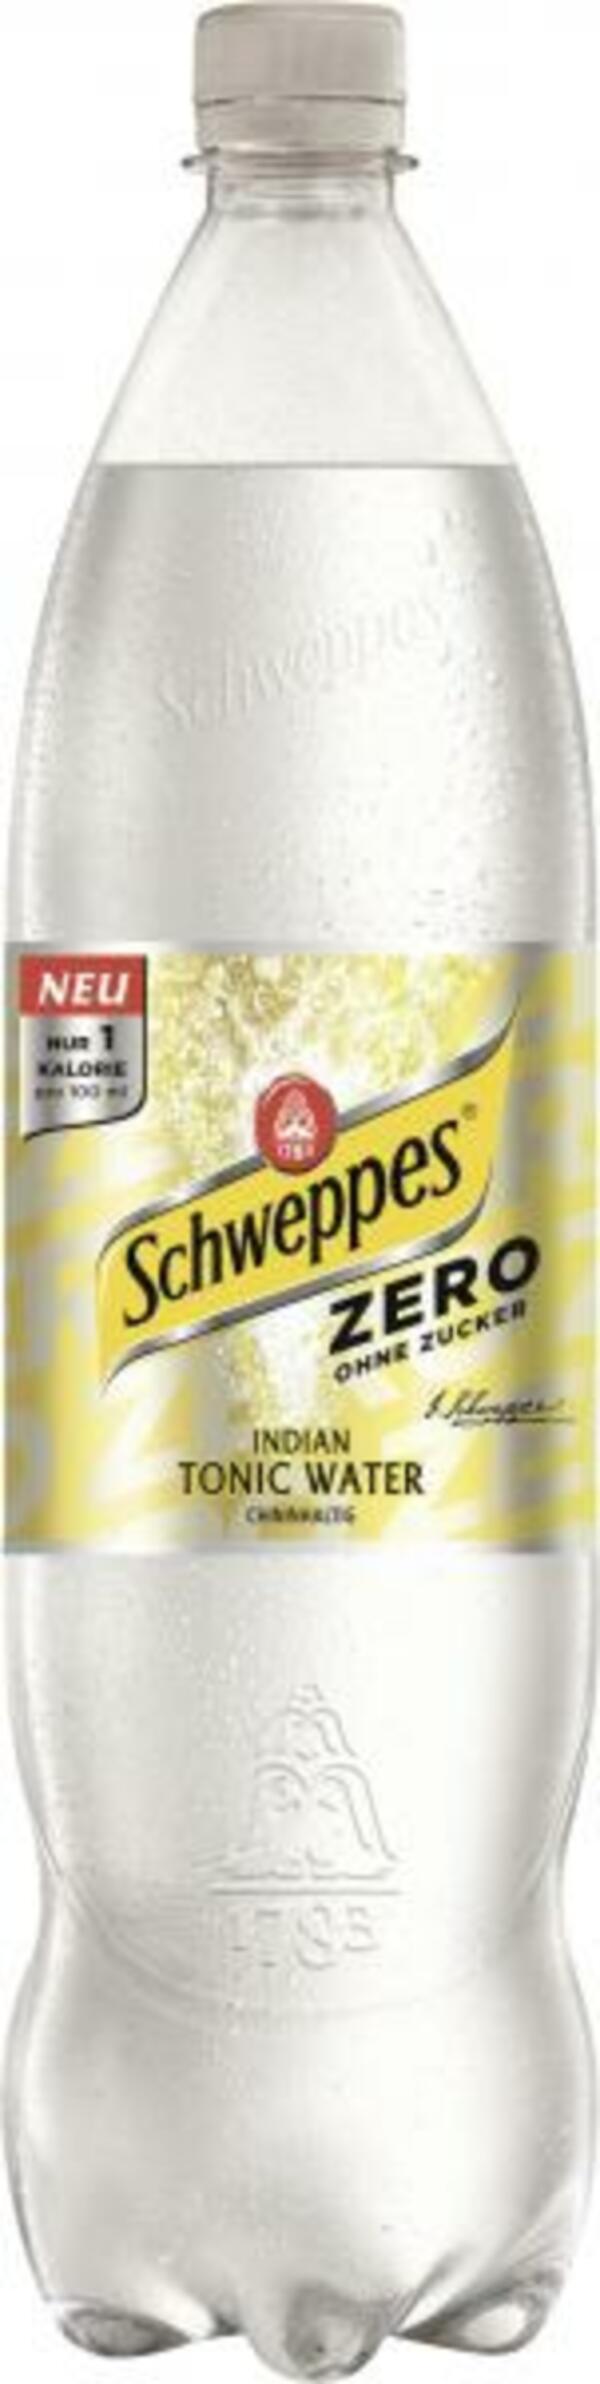 Bild 1 von Schweppes Indian Tonic Water Zero (Einweg)